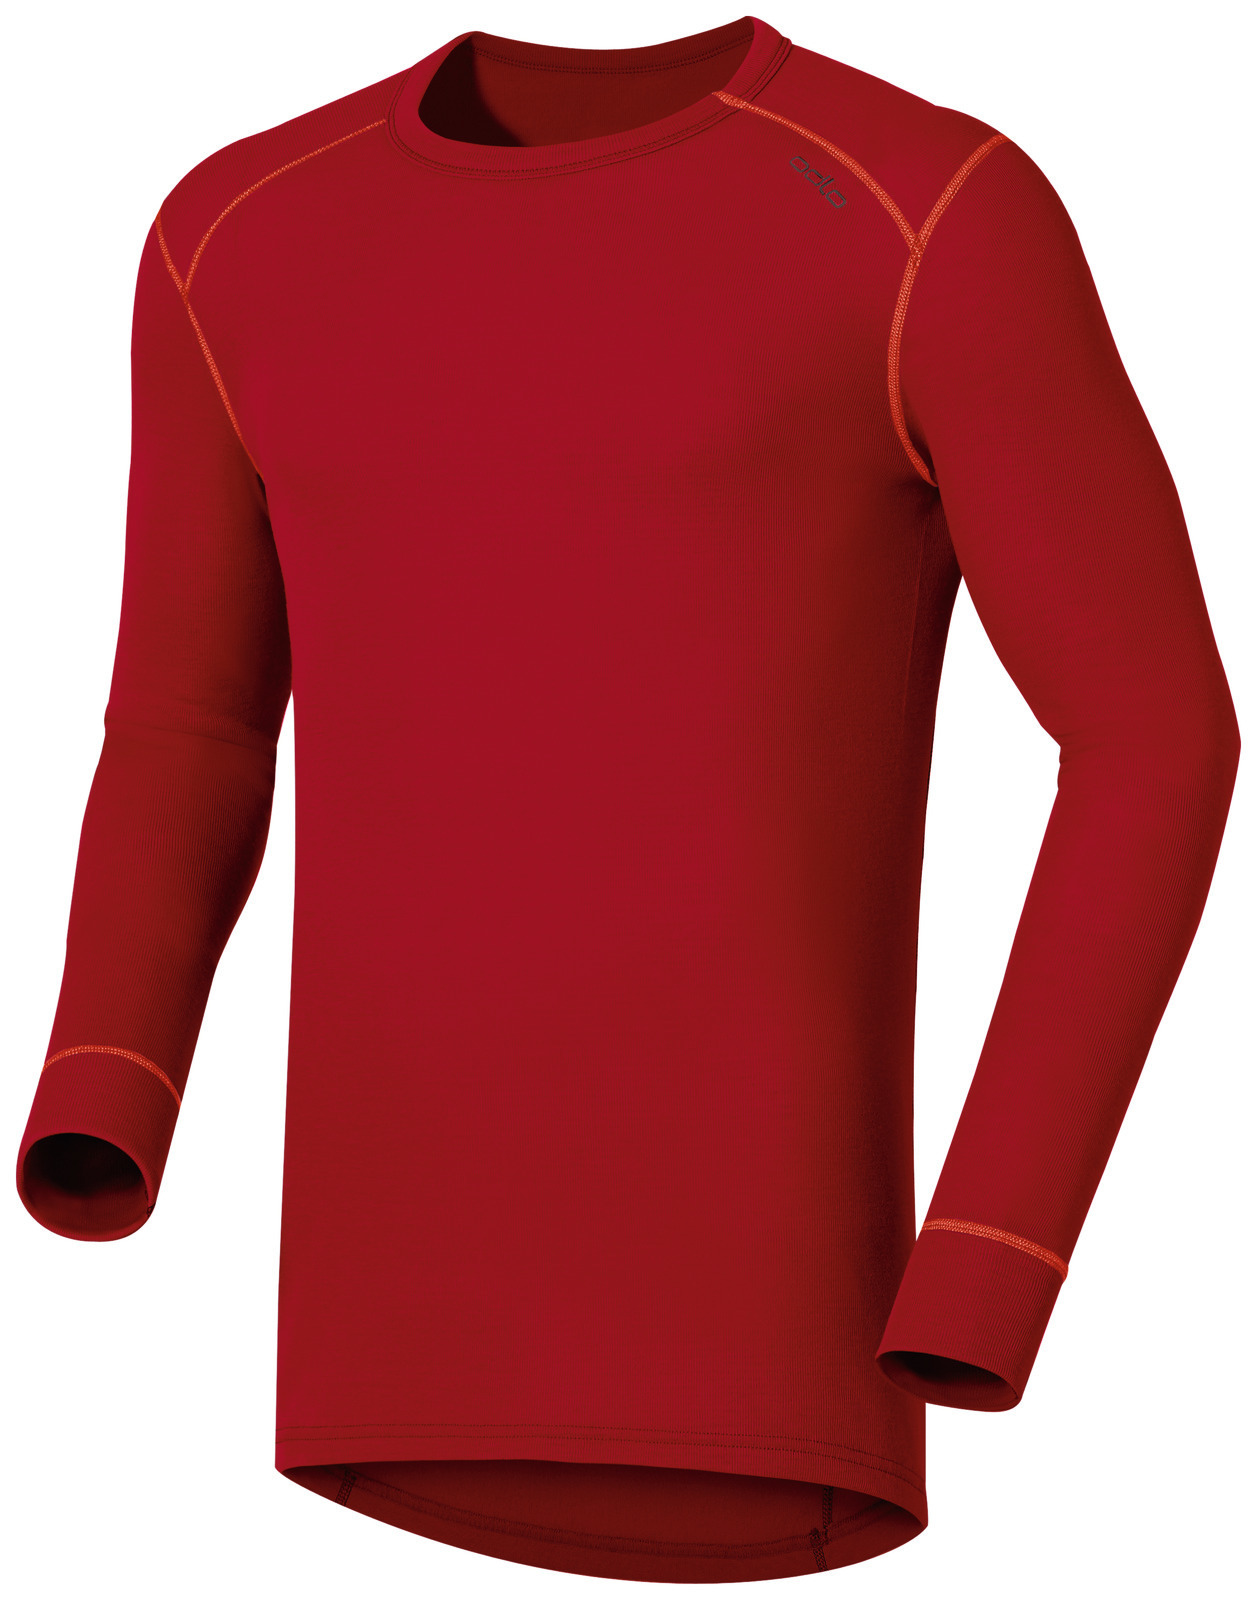 Мужское термобелье рубашка Odlo L/S Crew Neck Warm 152022-36100 купить вИнтернет-магазин Five-sport.ru